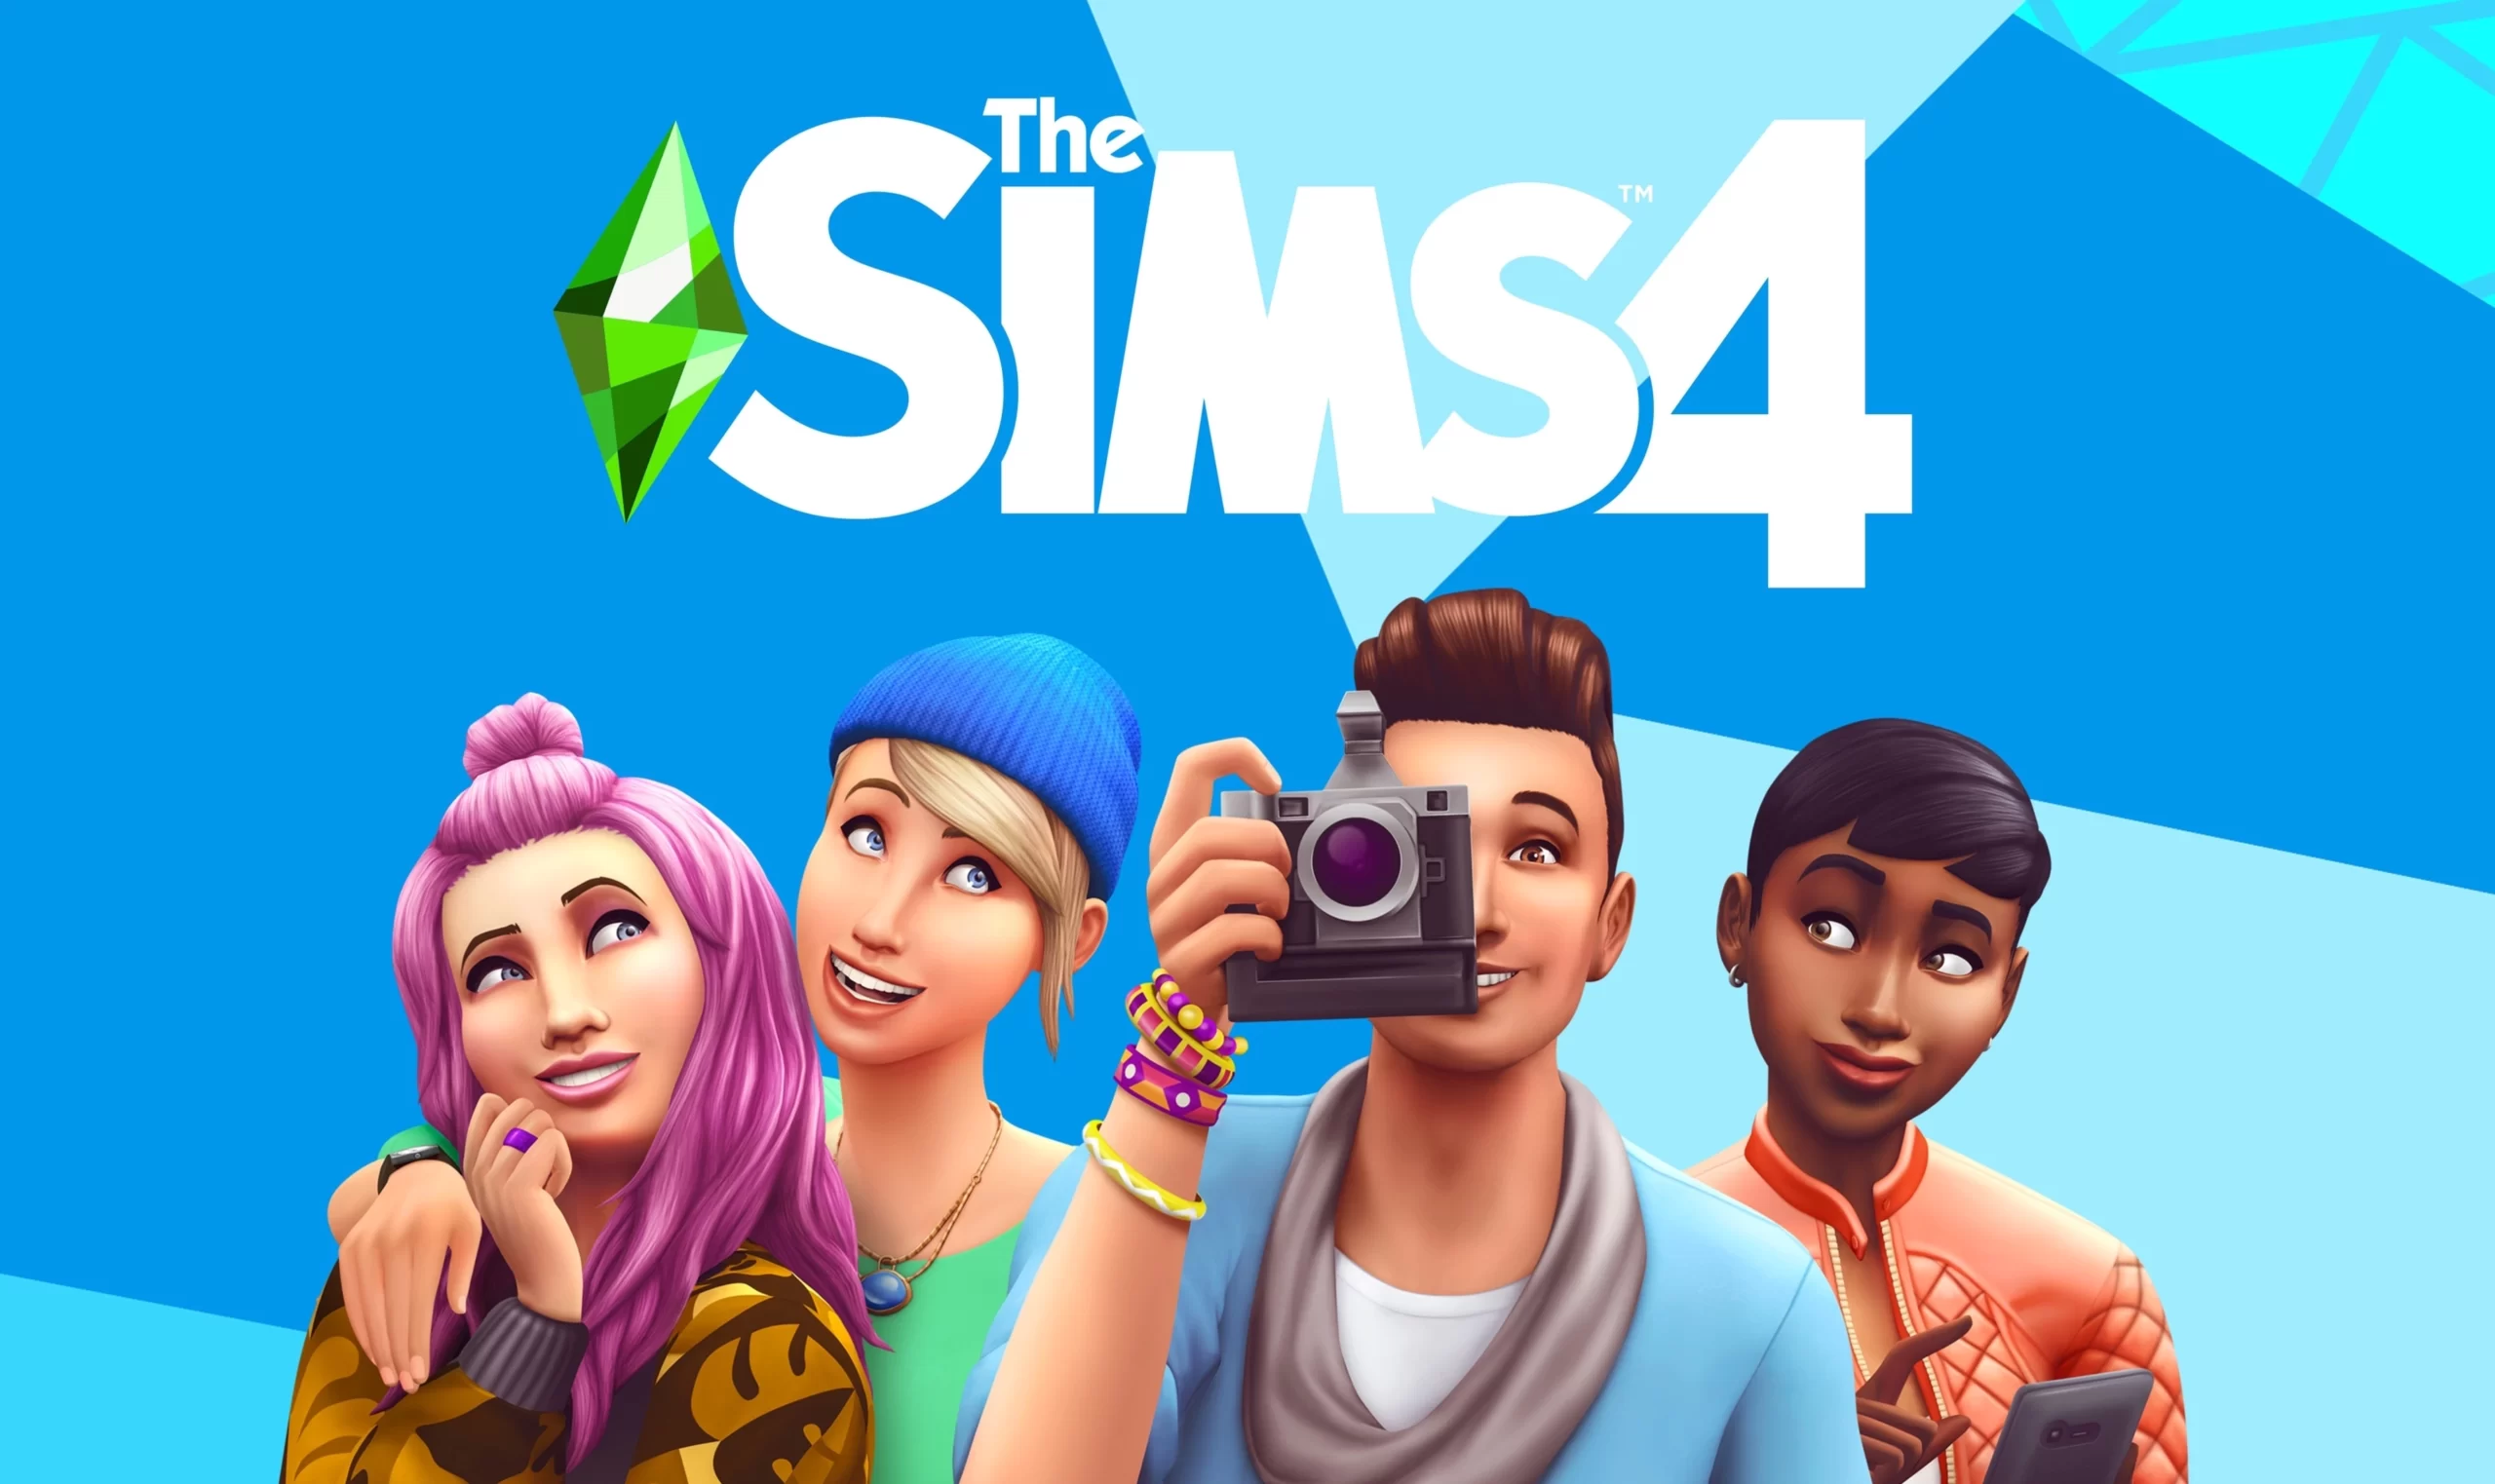 EA Games lança pacote de expansão para The Sims 4, o Vida na Cidade